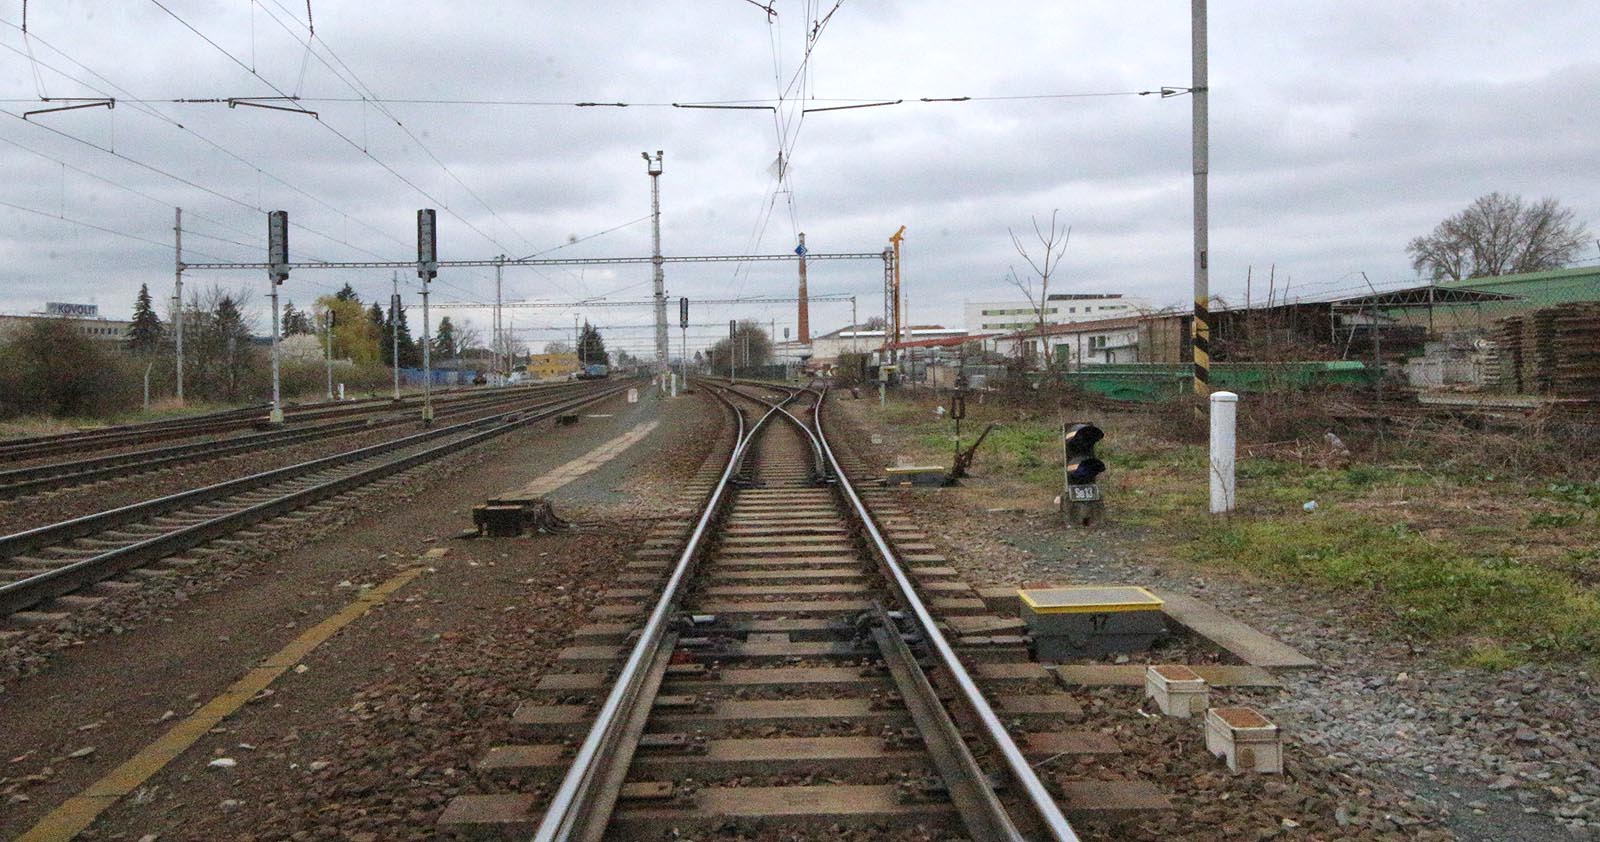 Pohled ze severního (Heršpického) zhlaví stanice Modřice směrem k cihleně. Z výhybky č. 17 (pod fotografem) je vidět výhybku č. 16 a vpravo od ní výhybku č. 14, ze které odbočuje a do vrat vchází kolej vlečky společnosti Firesta. Tudy vjížděly do areálu překladiště nákladní vlaky, aby se pak úvraťově vrátily k severu, k rampě úzkokolejky (je vidět na fotce vpravo).